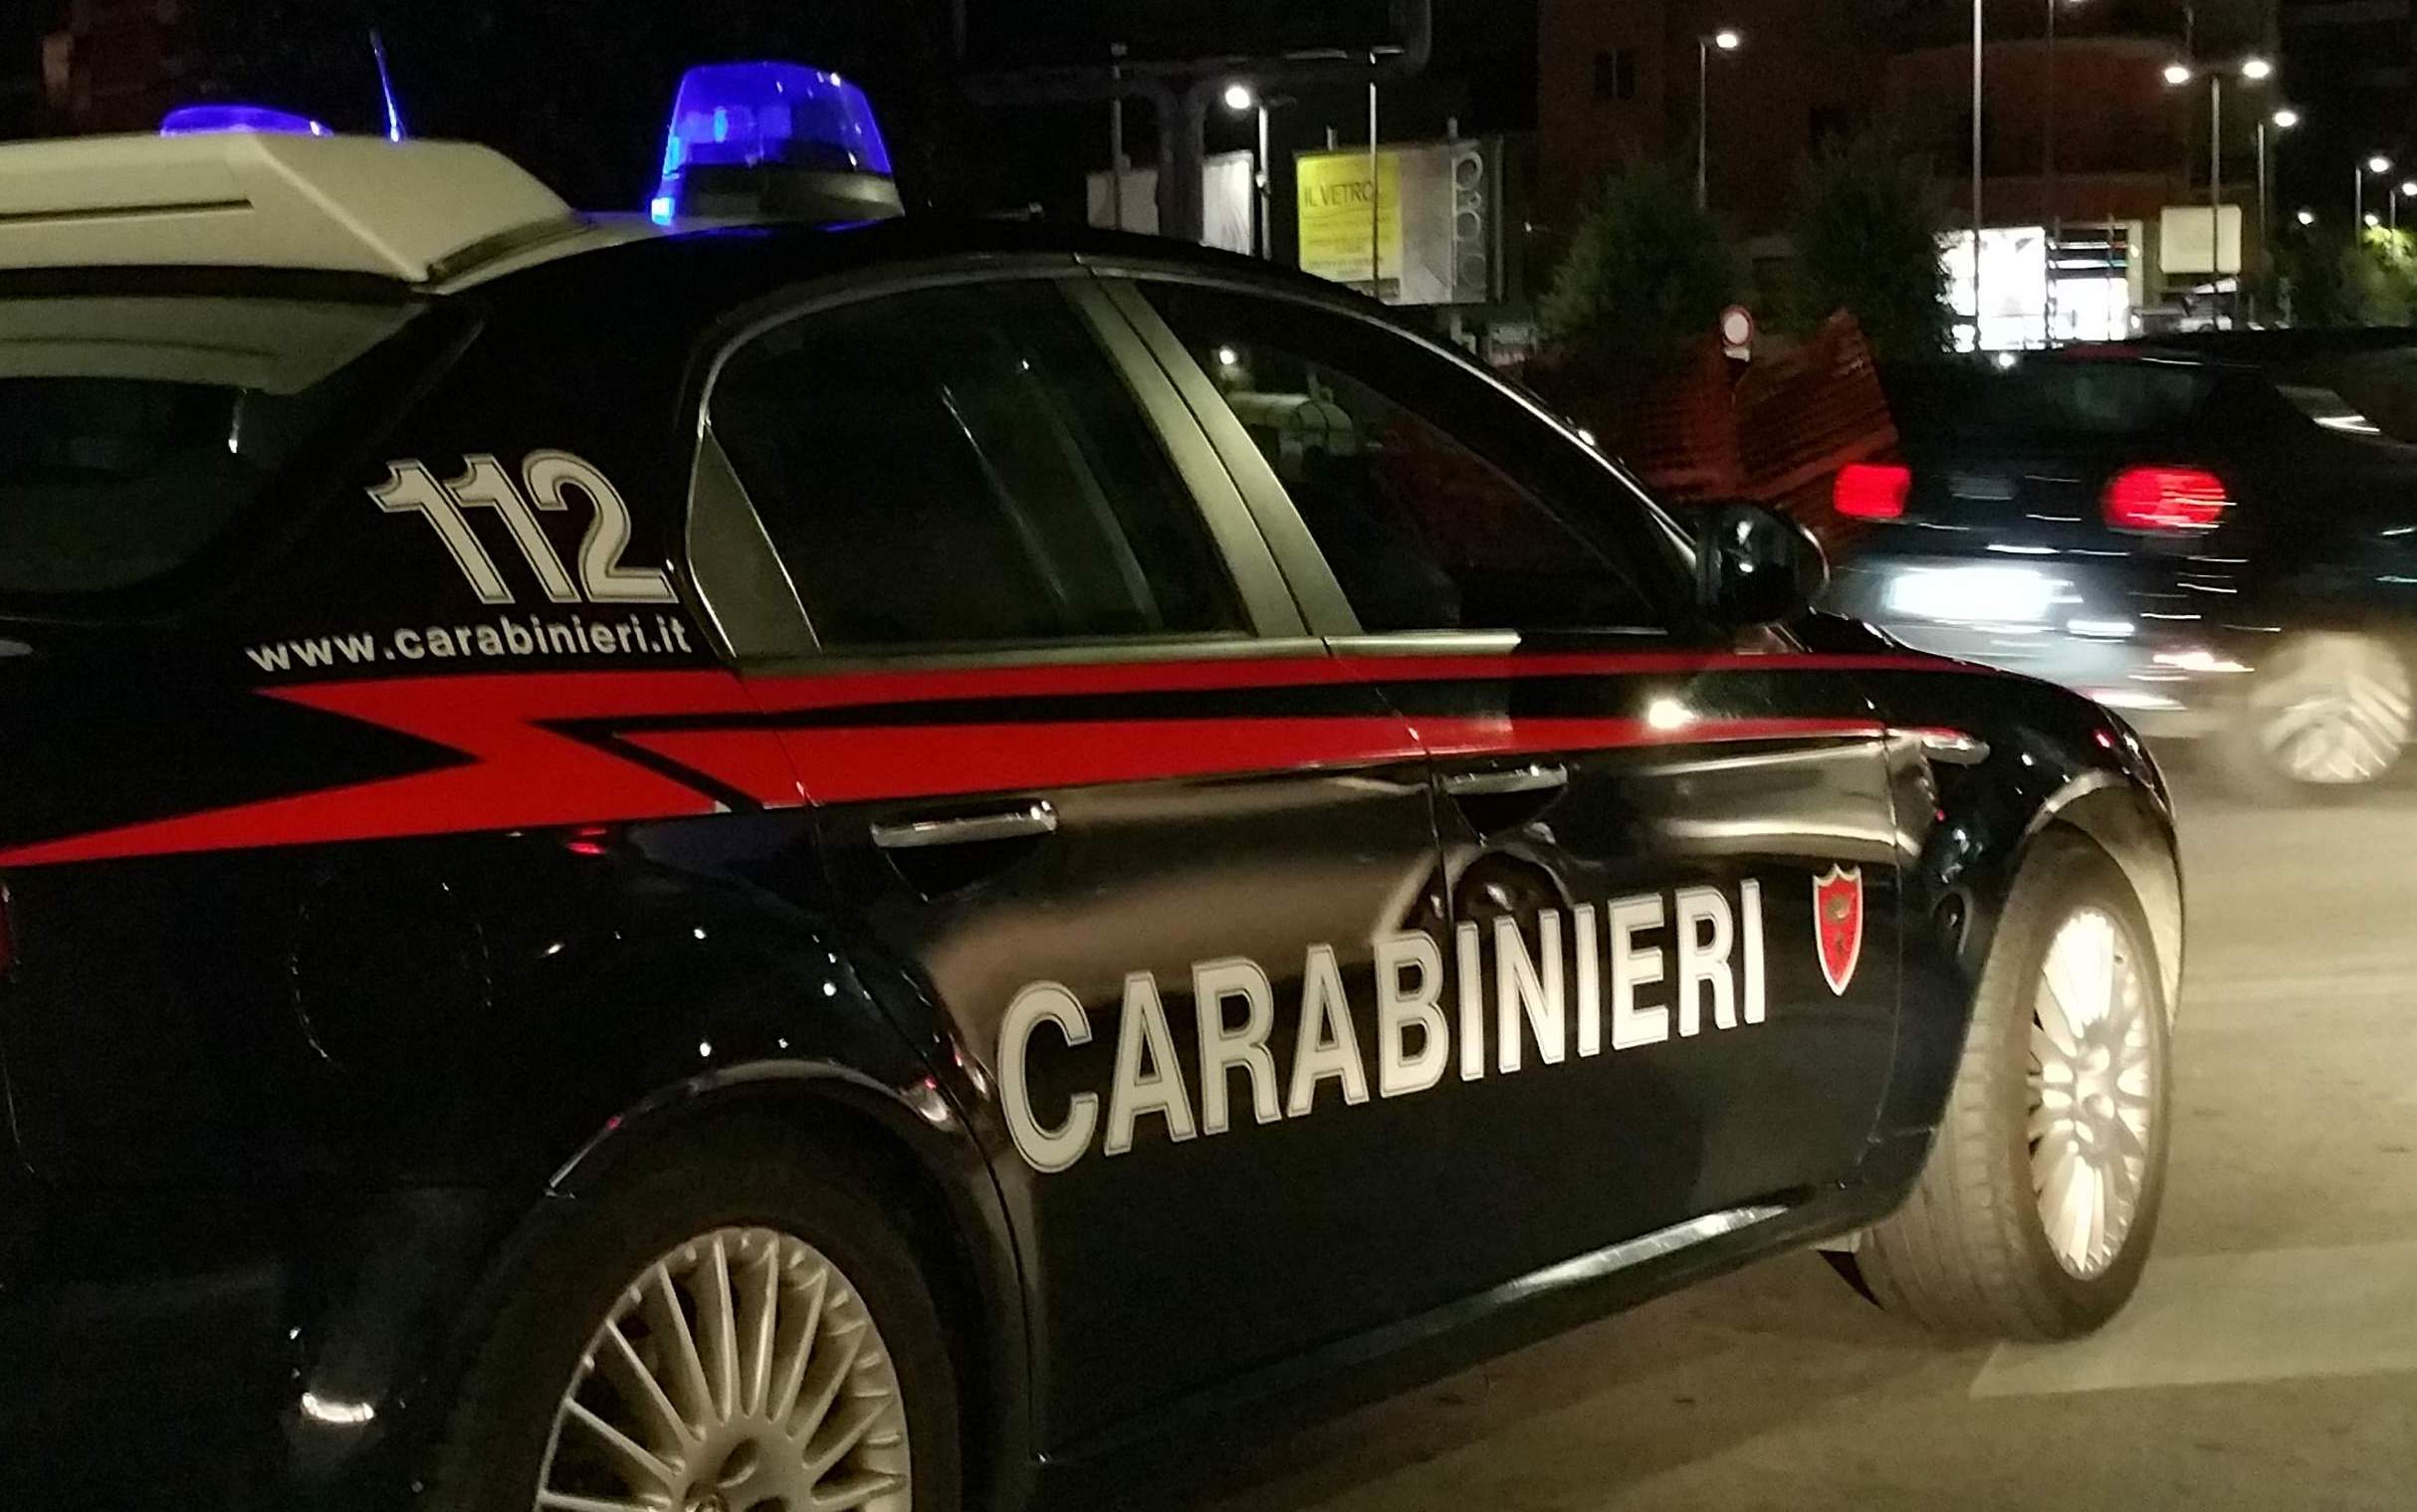 Avellino| Giro di prostituzione minorile, arresti domiciliari per De Vito